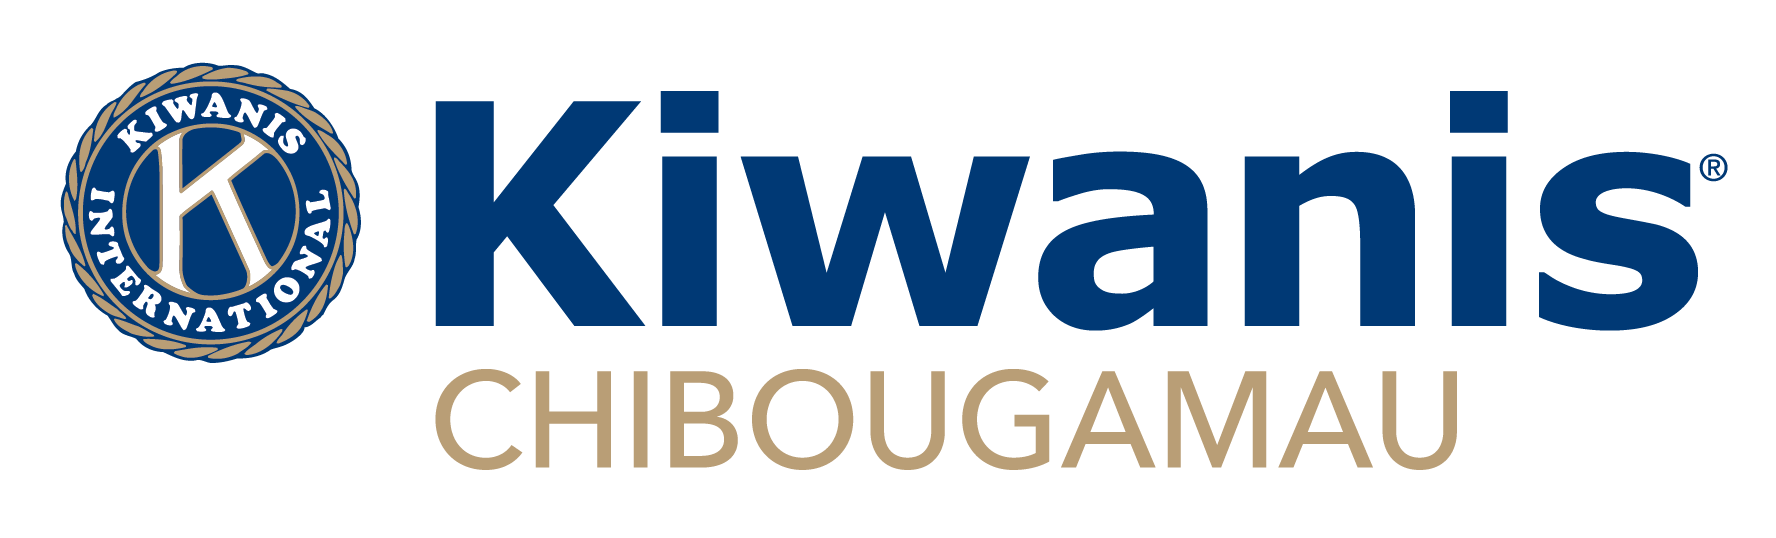 Kiwanis Chibougamau